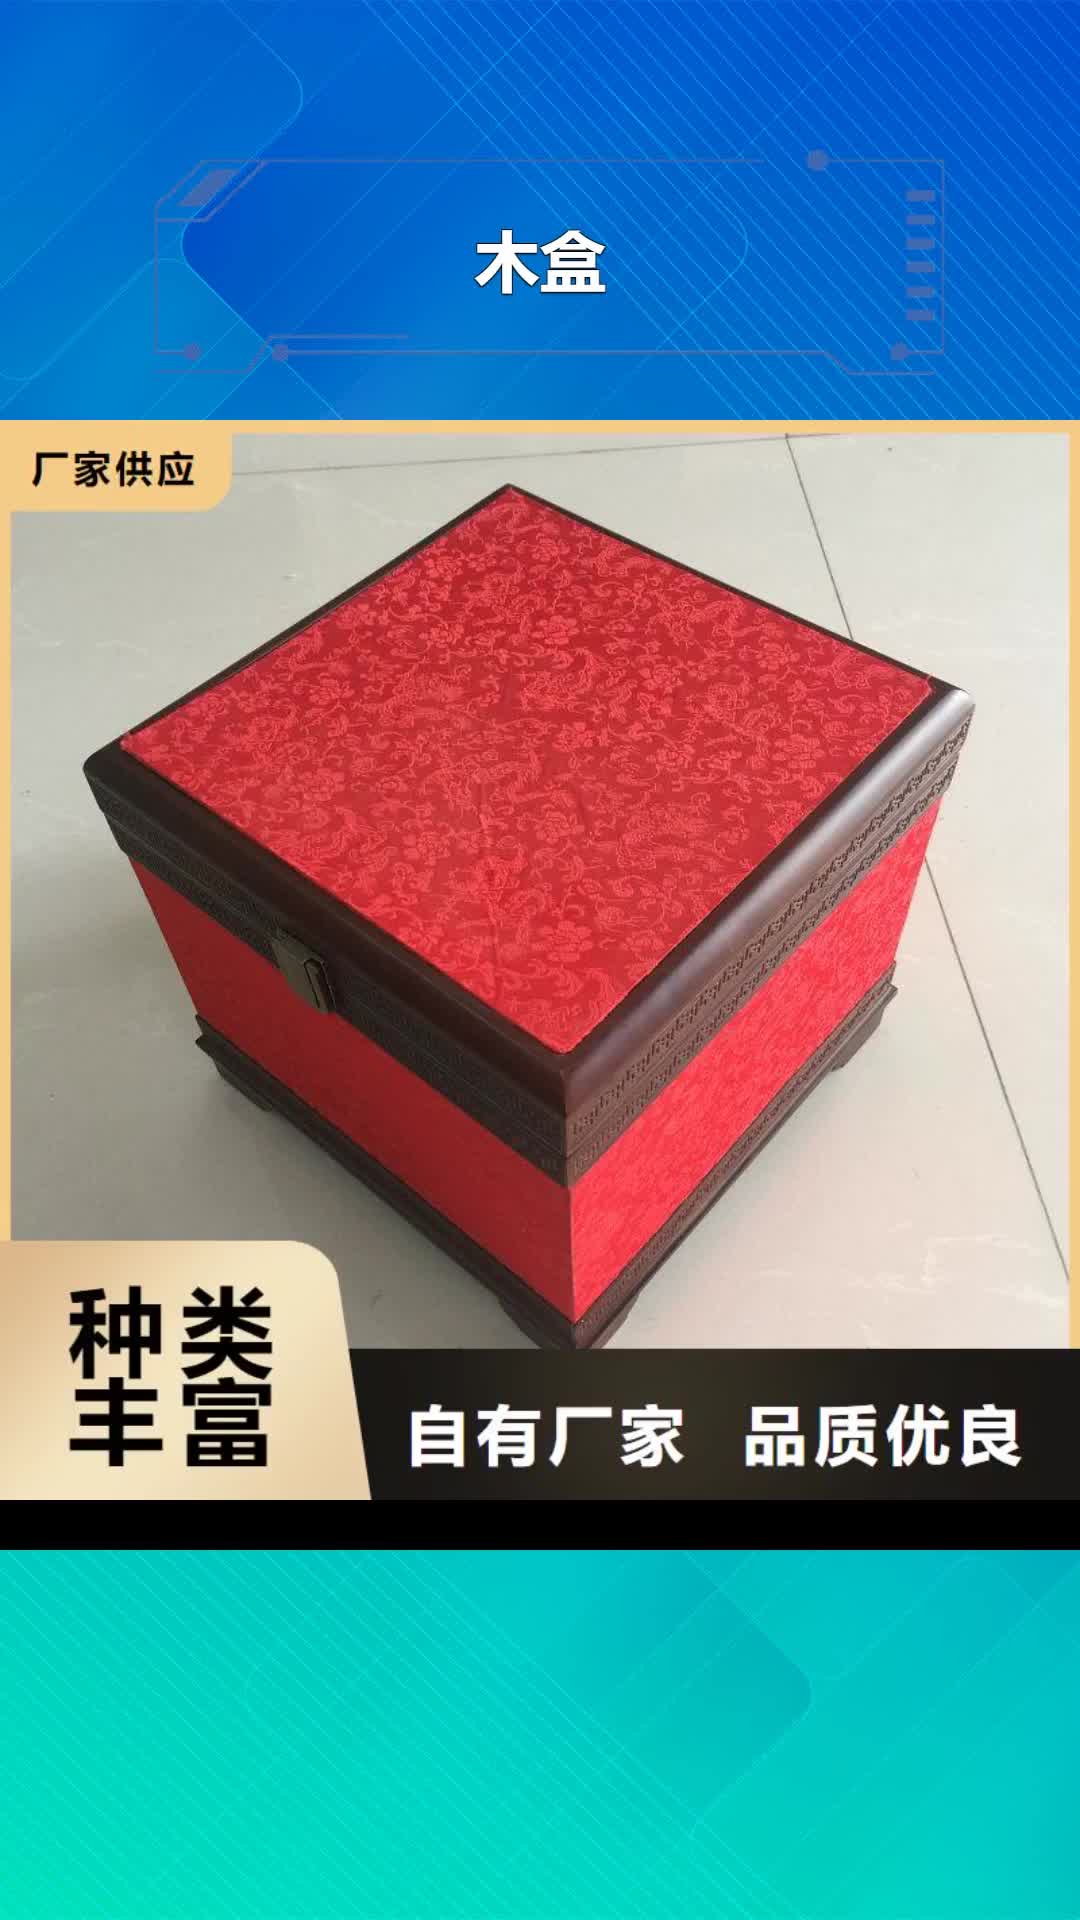 【牡丹江 木盒,防伪制作保障产品质量】